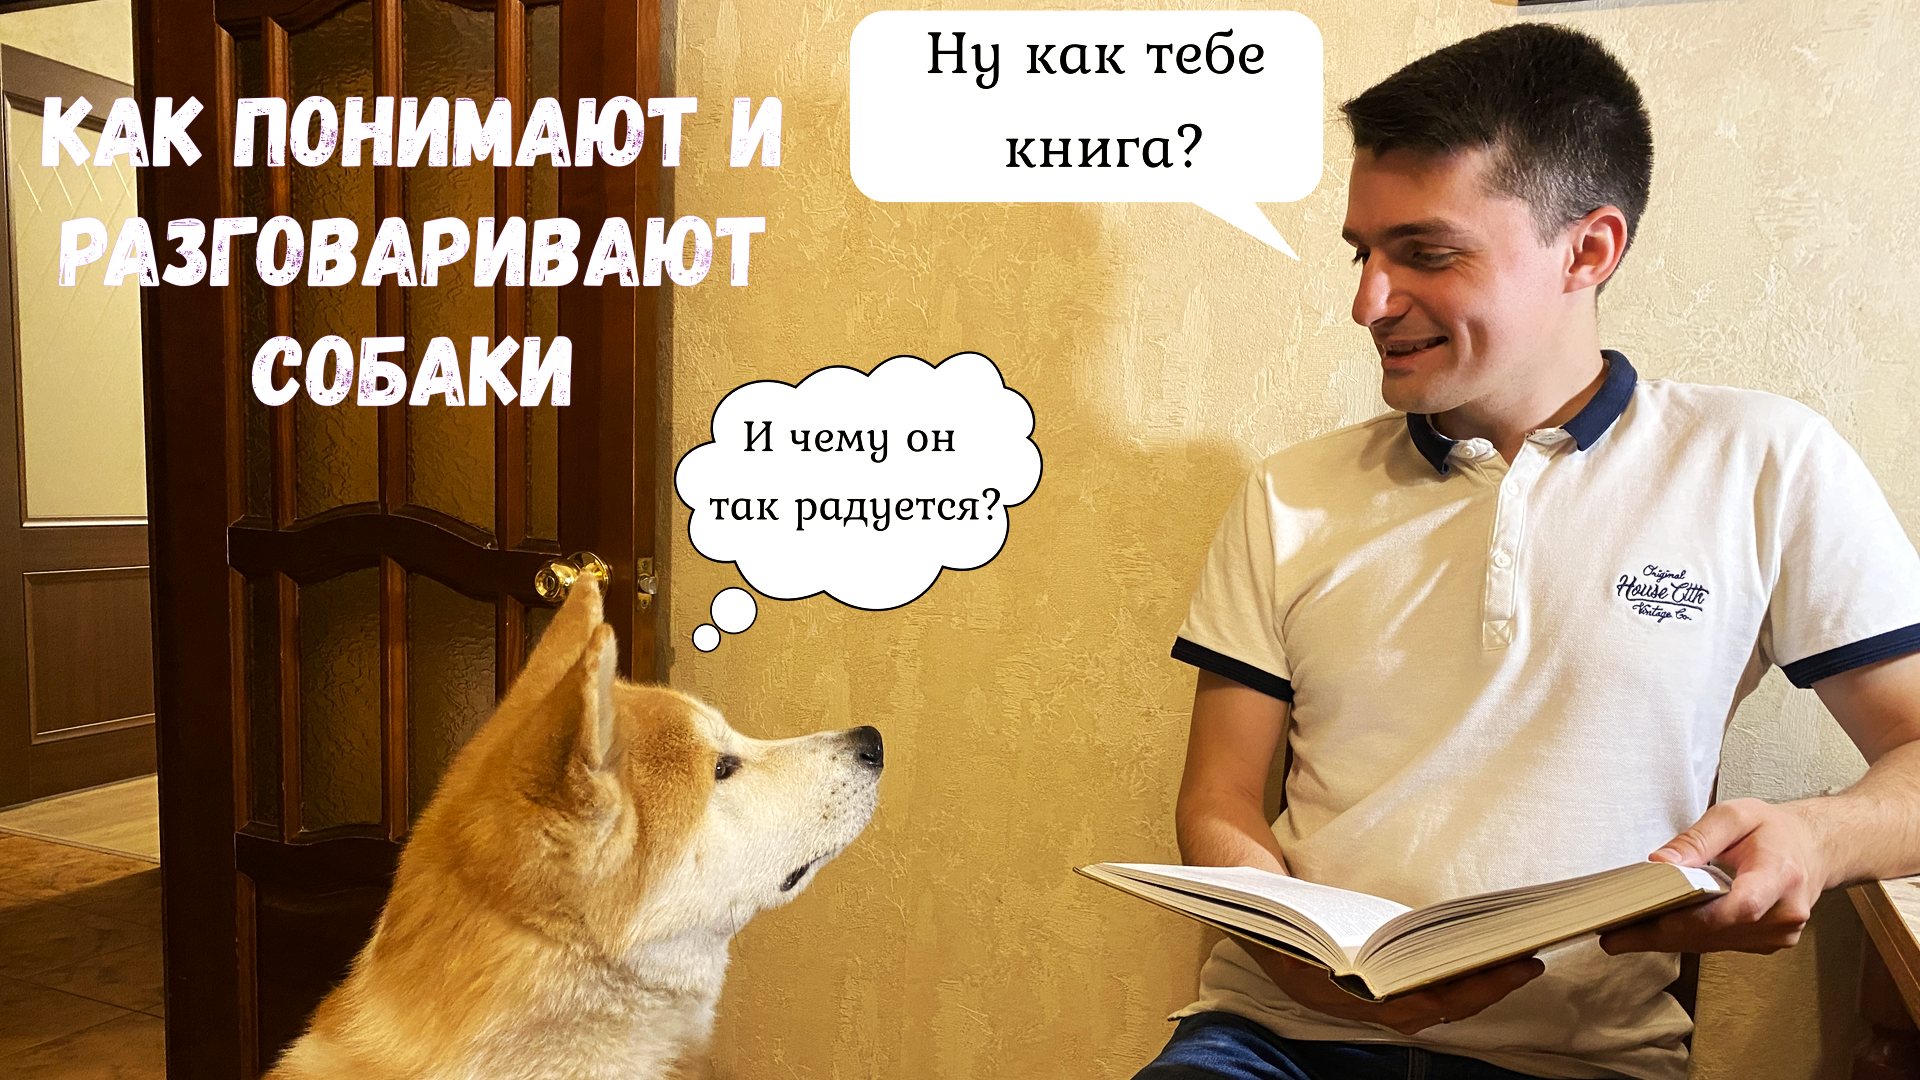 Собака всё понимает, но сказать не может, или как разговаривают собаки?